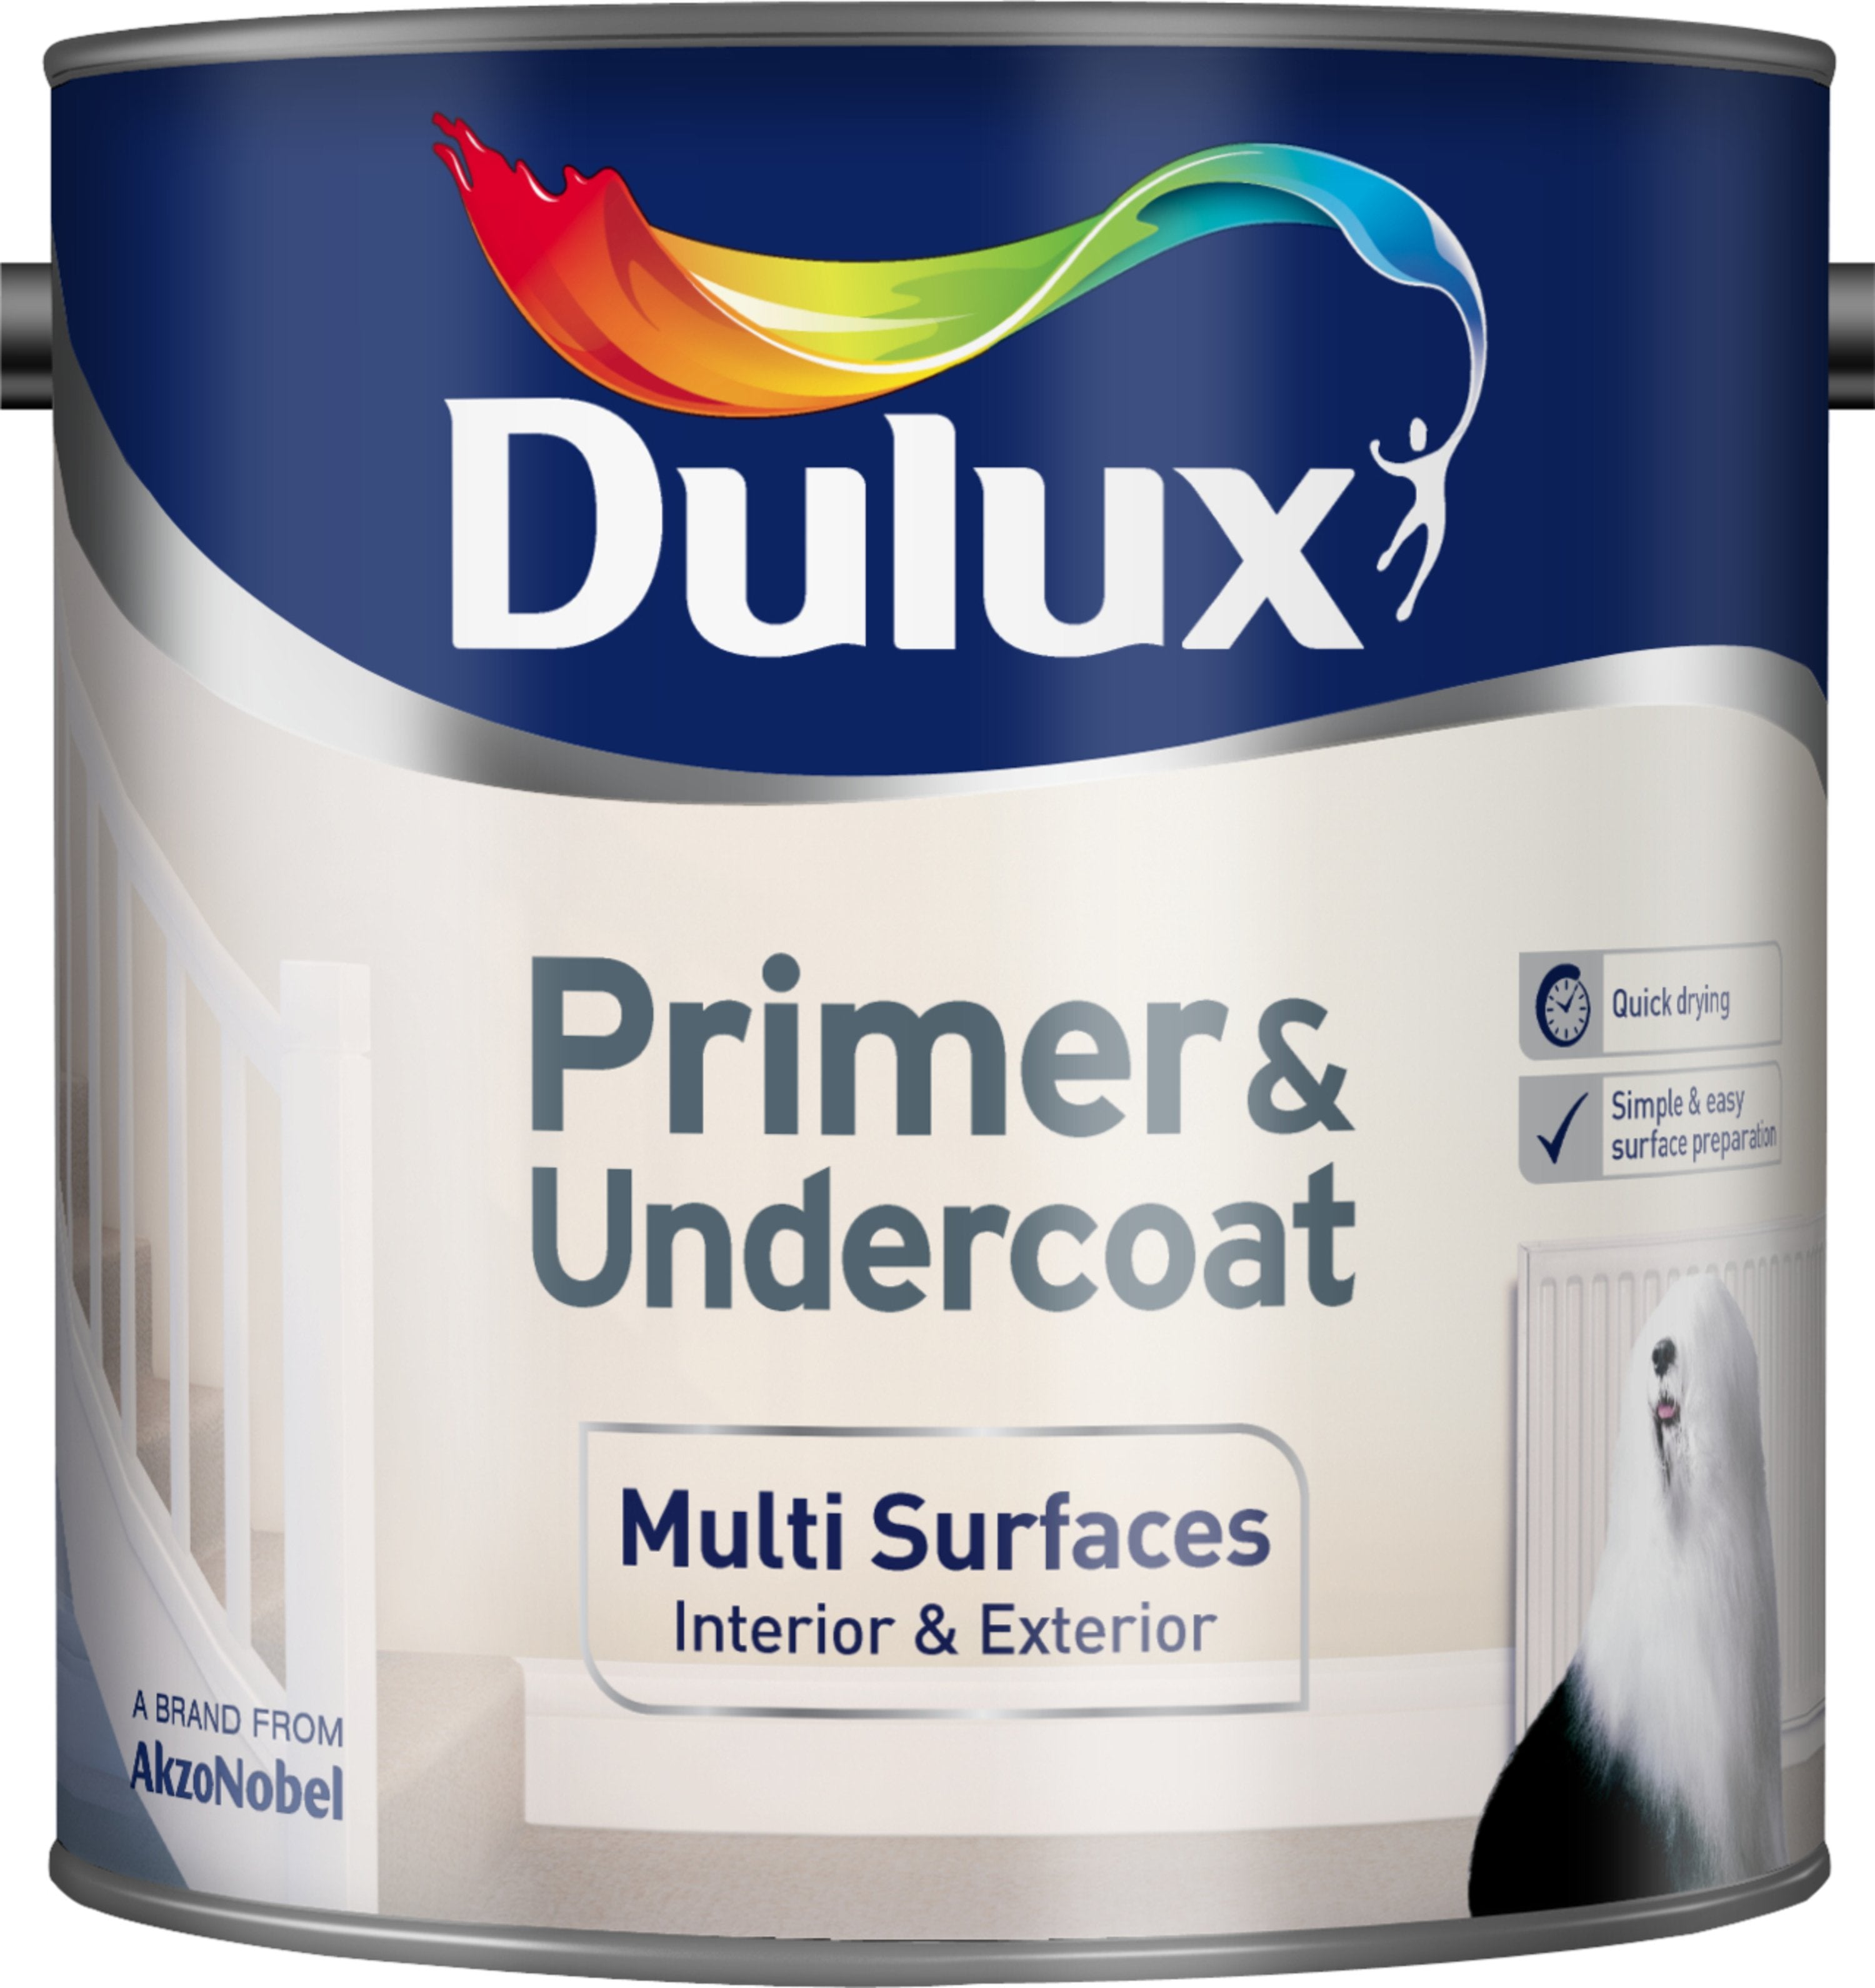 Dulux-Primer-&-Undercoat-for-Multi-Surfaces-2.5L